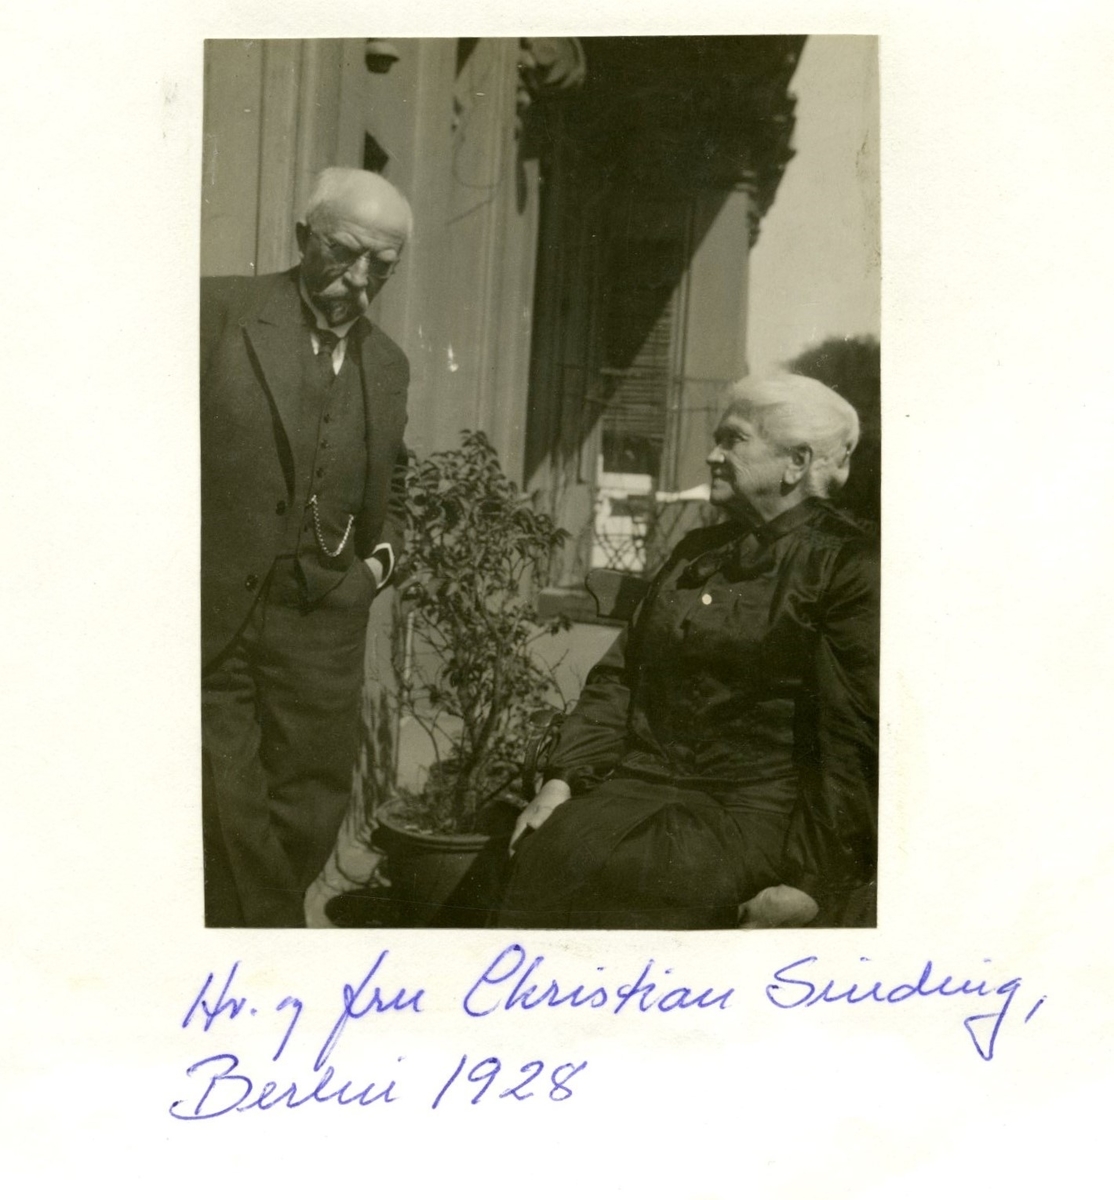 Christian Sinding og Augusta Gade f. Smith-Petersen utendørs på balkong.

Påskrift under bildet: Hr. og Fru Christian sinding, Berlin 1928.